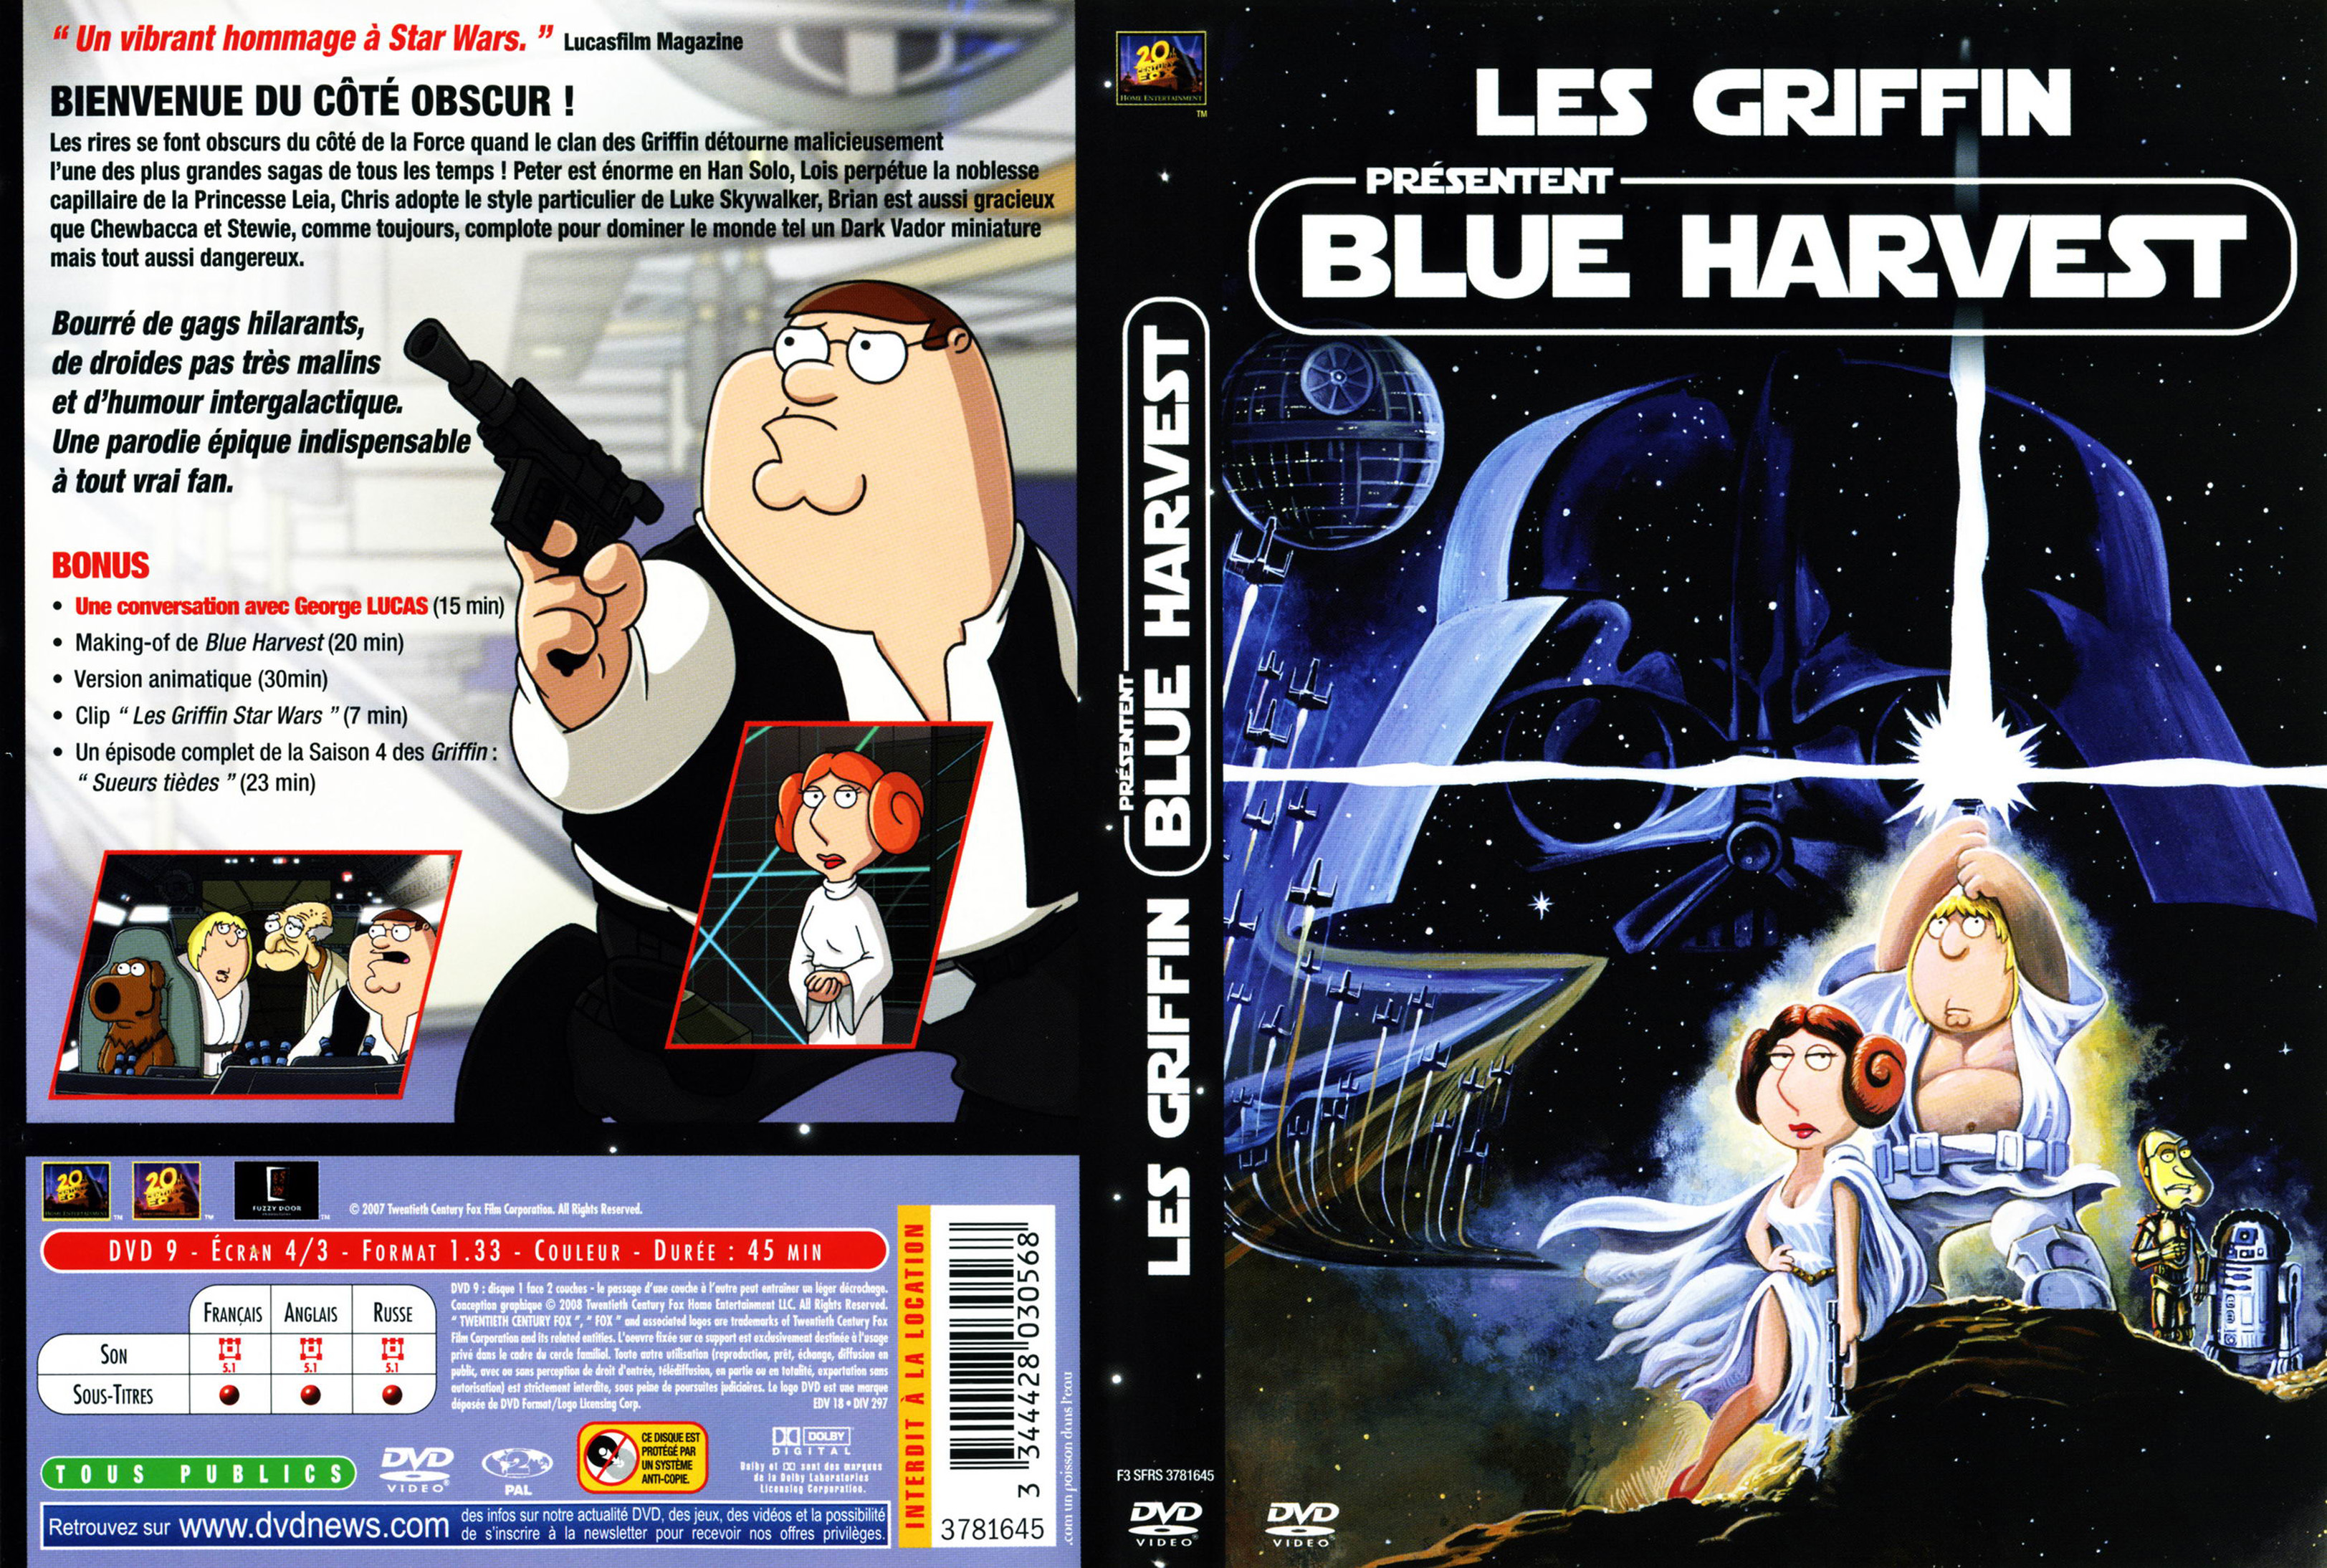 Jaquette DVD Les Griffin presentent Blue Harvest